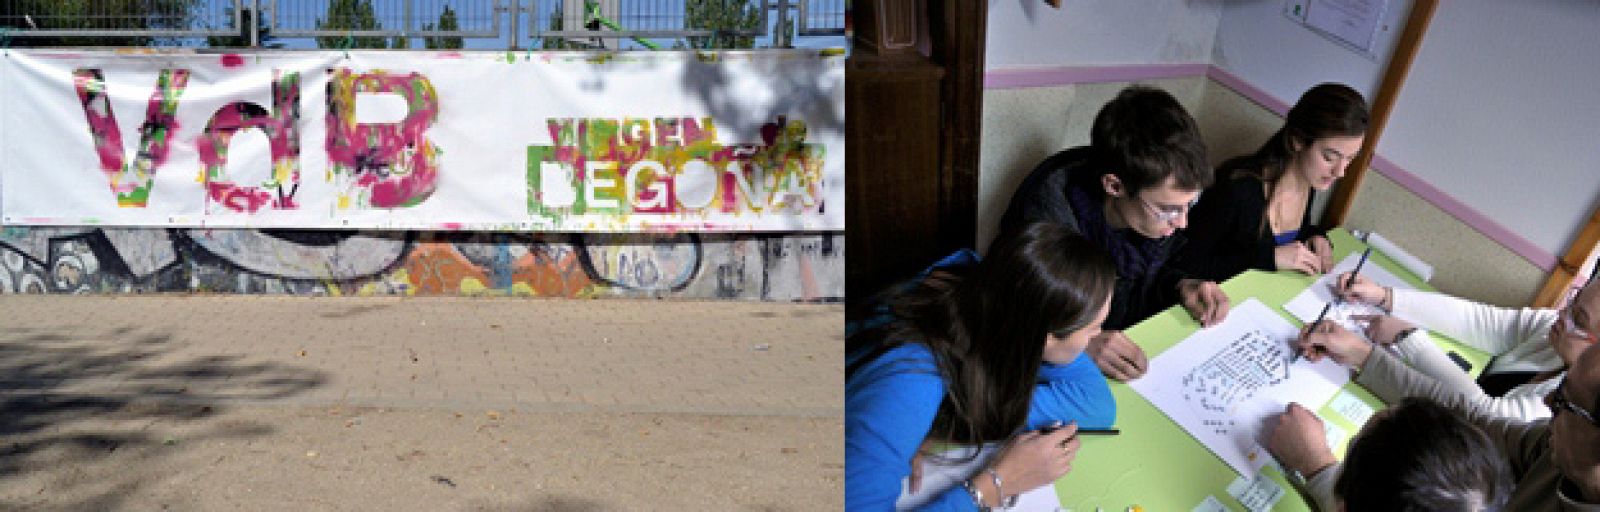 Mural realizado de forma colaborativa por los niños del barrio Virgen de Begoña (Madrid). Paisaje Transversal. Junio 2012. La exposición VdB. Regeneración urbana participativa ya puede verse en CentroCentro